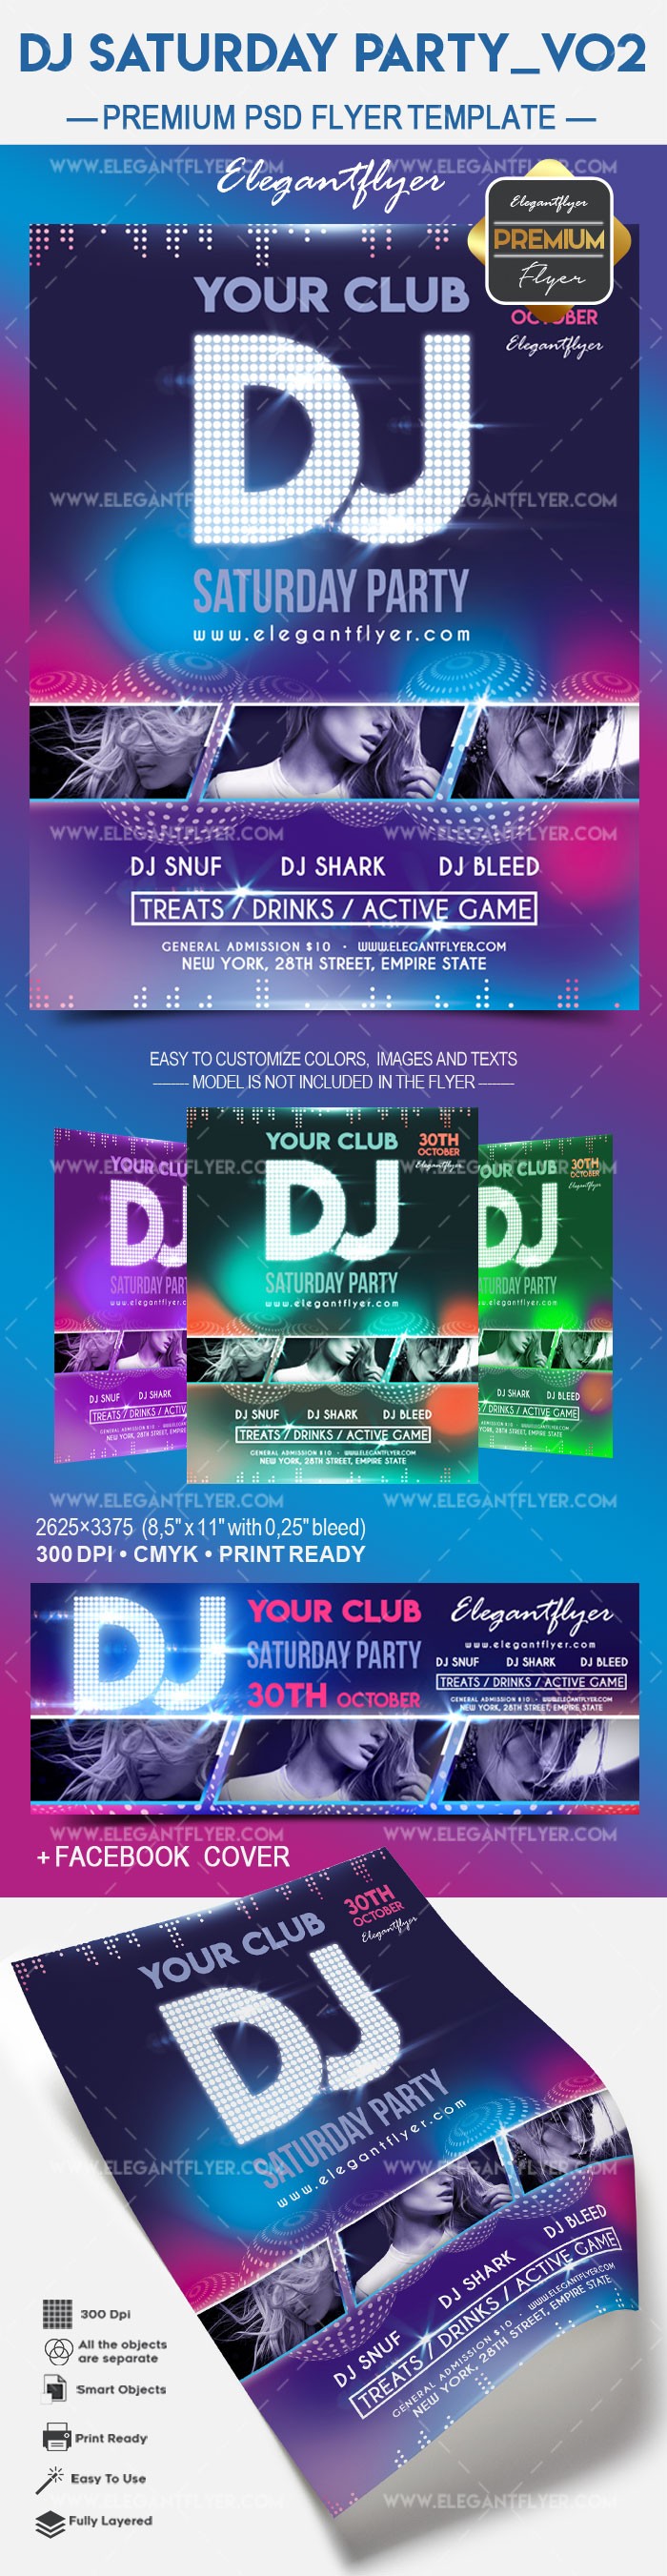 Festa de DJ no sábado v02 by ElegantFlyer